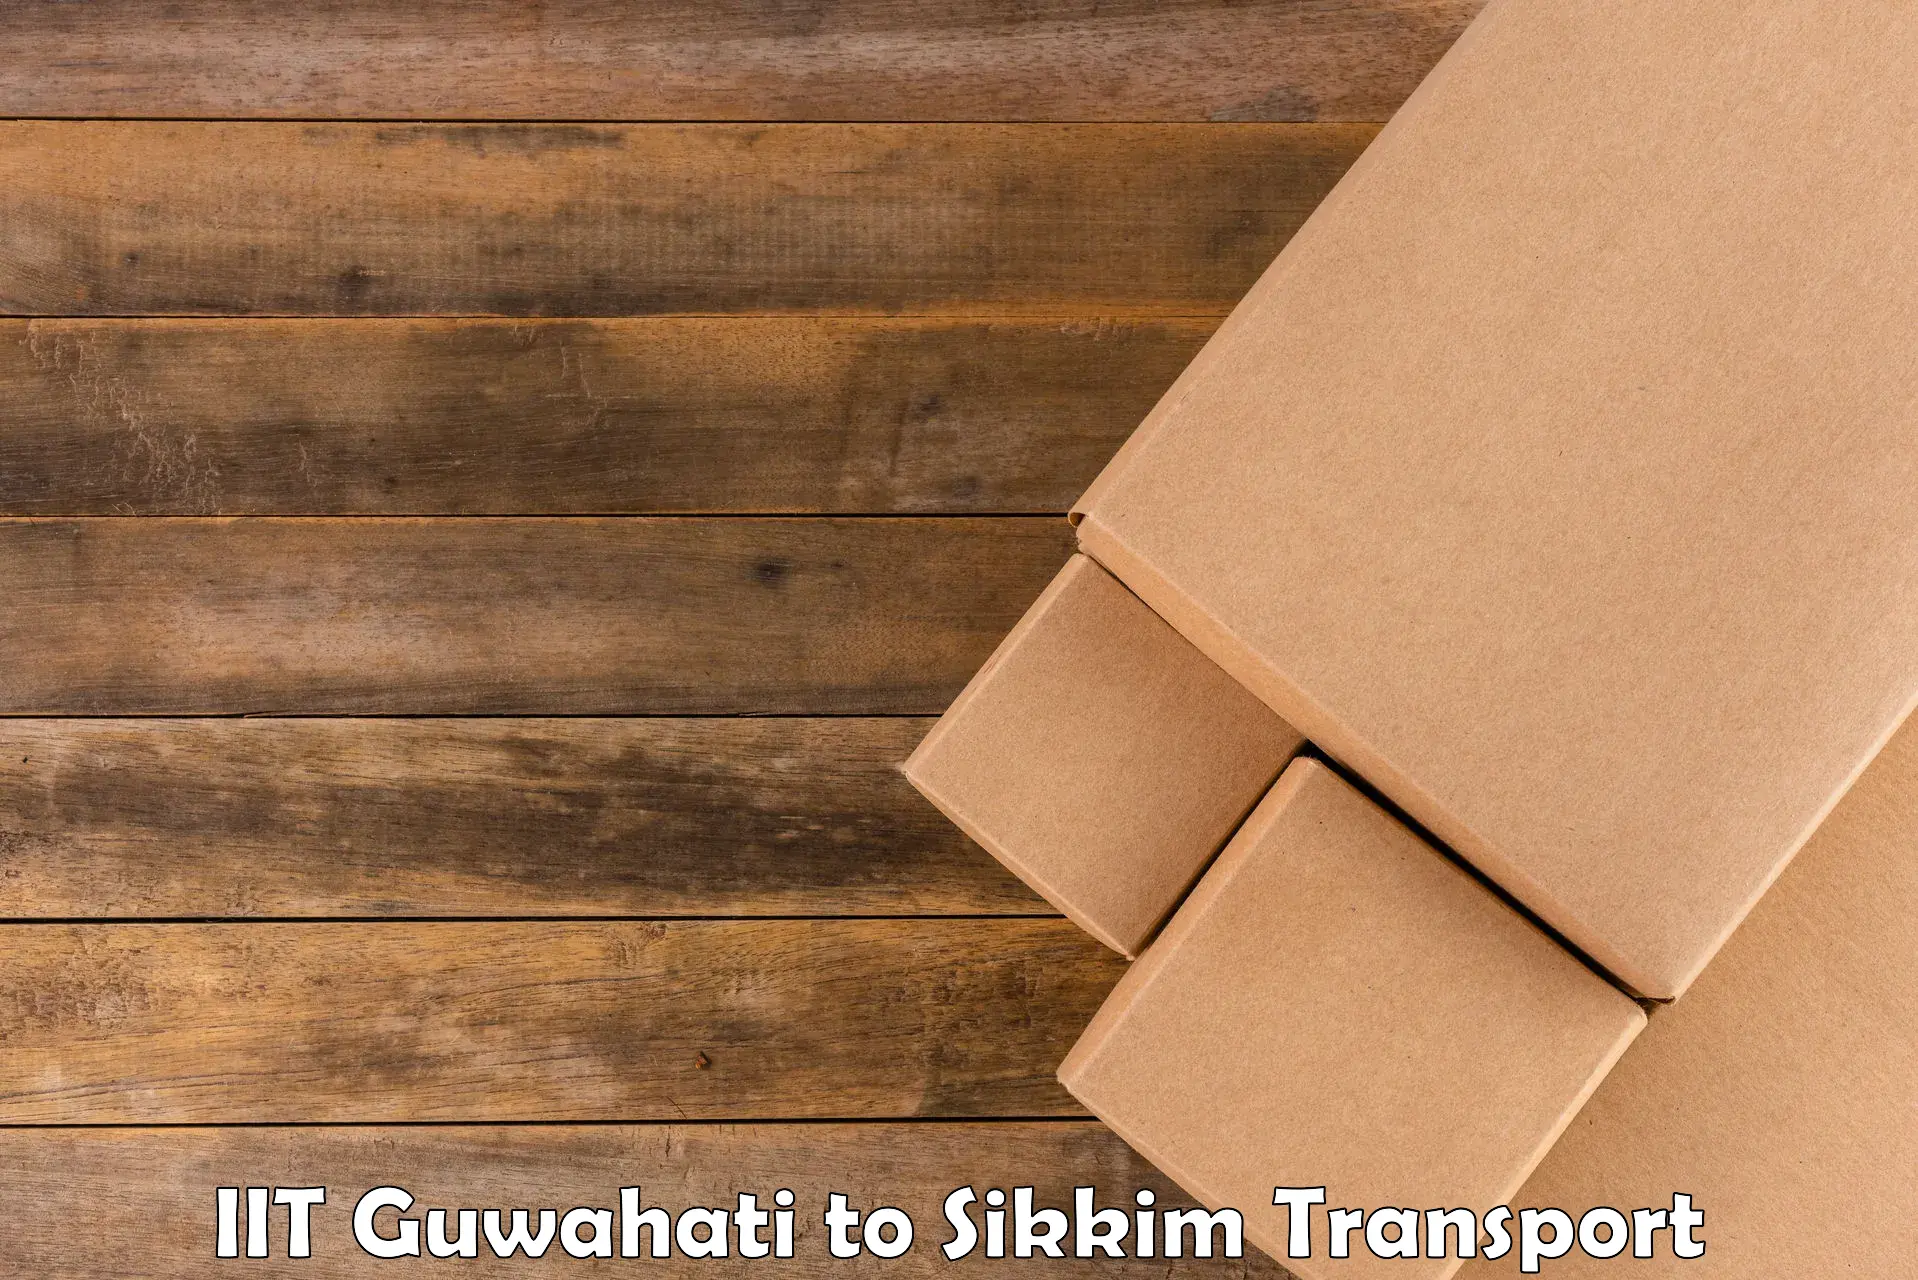 Cargo train transport services IIT Guwahati to Sikkim